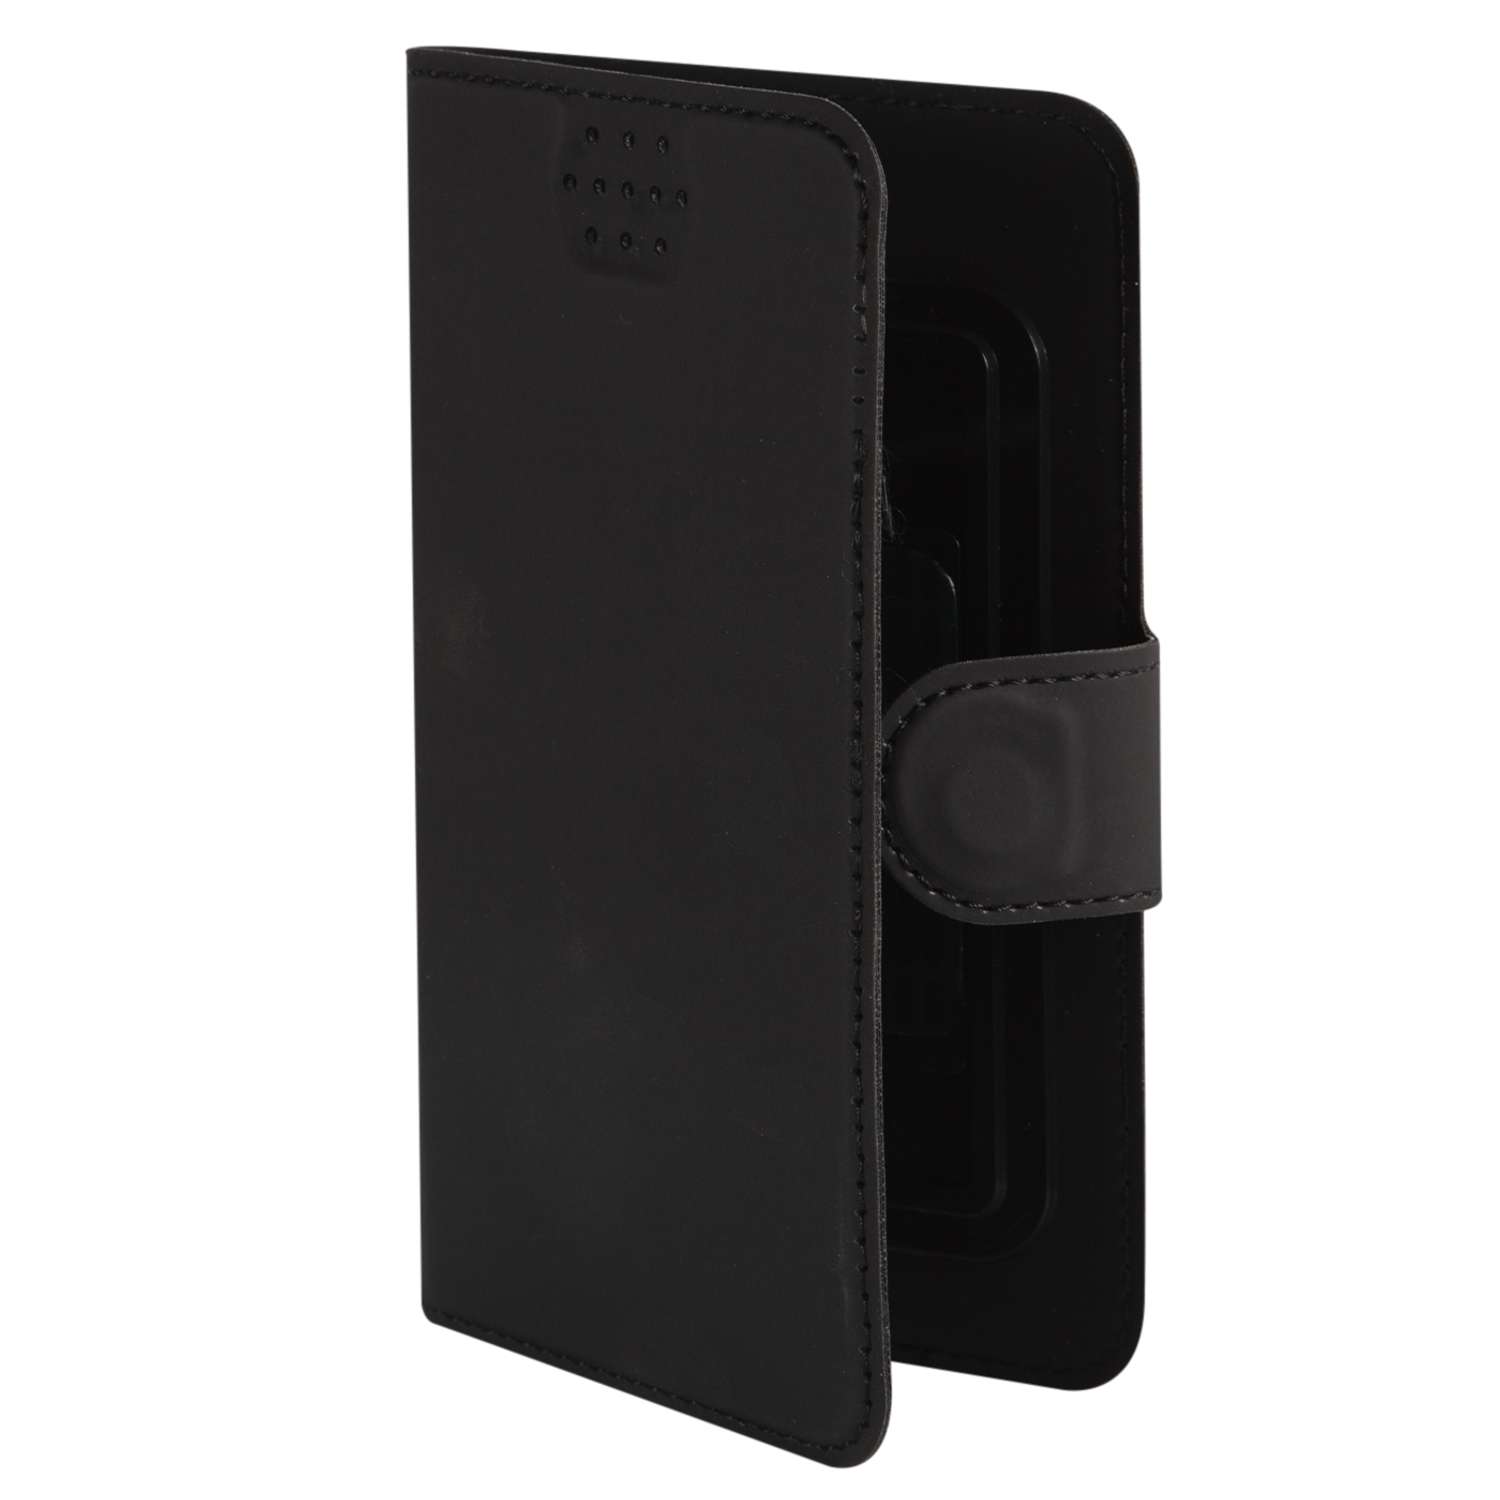 Чехол универсальный iBox UniMotion для телефонов 3.5-4.5 дюйма черный - фото 1